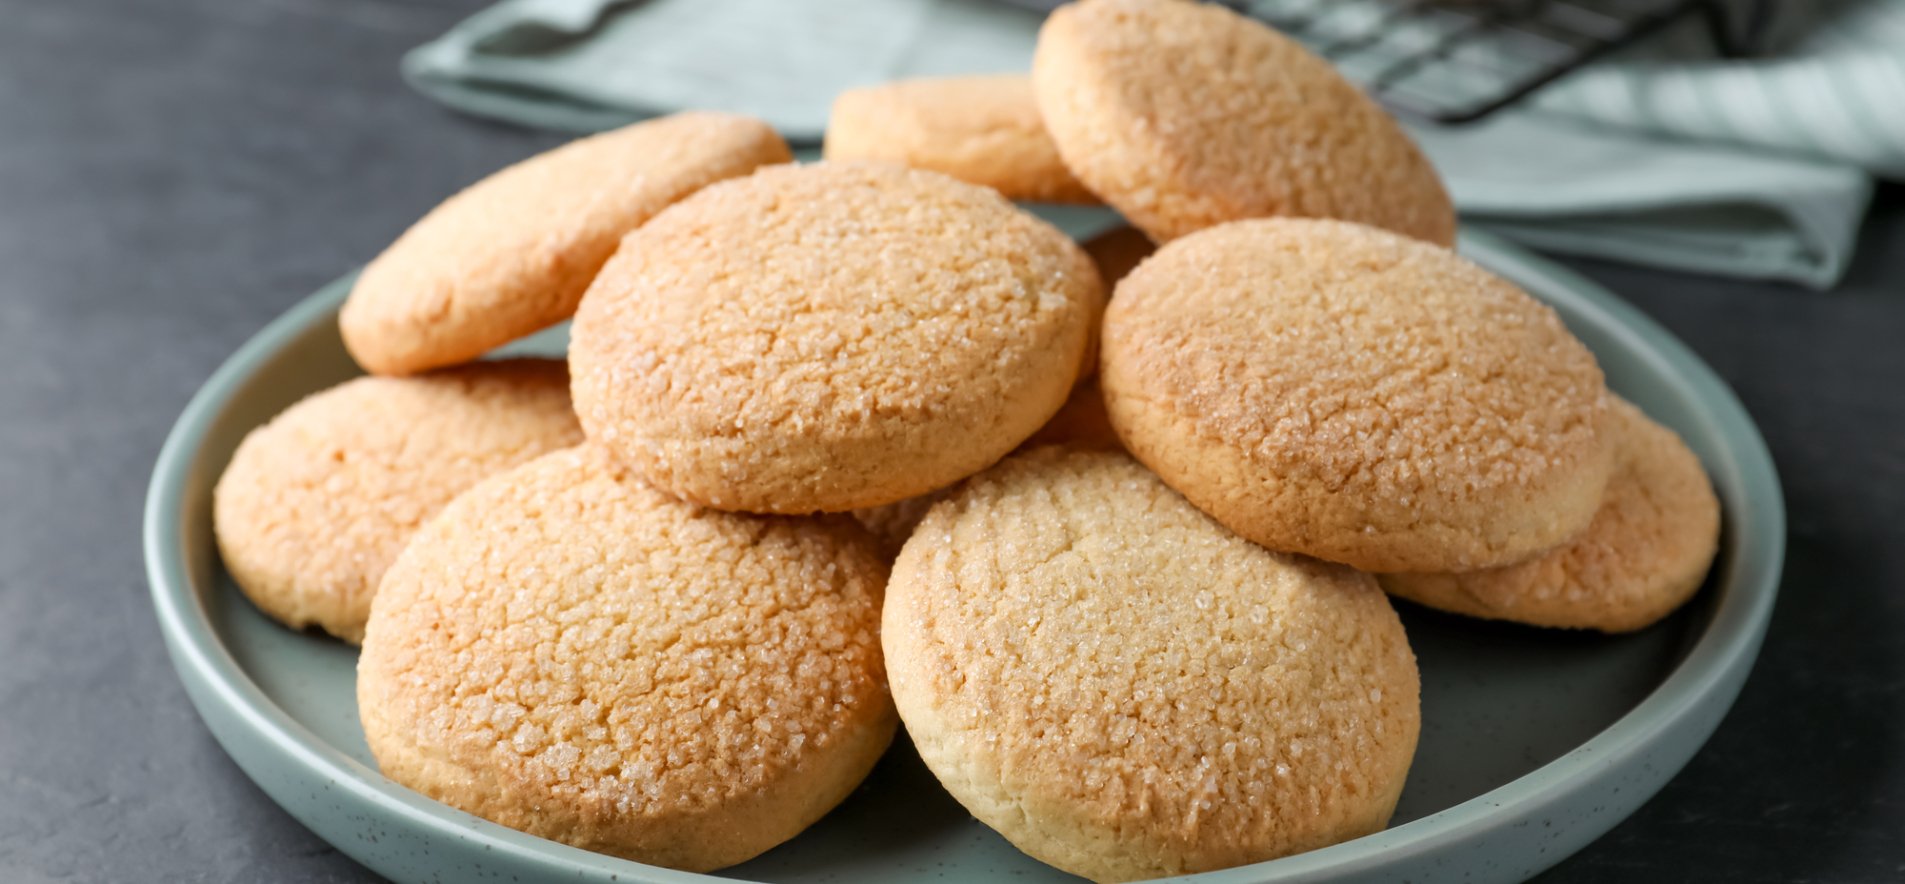 Домашние песочные печенья за 10 минут | Простой и очень вкусный рецепт печенья в домашних условия